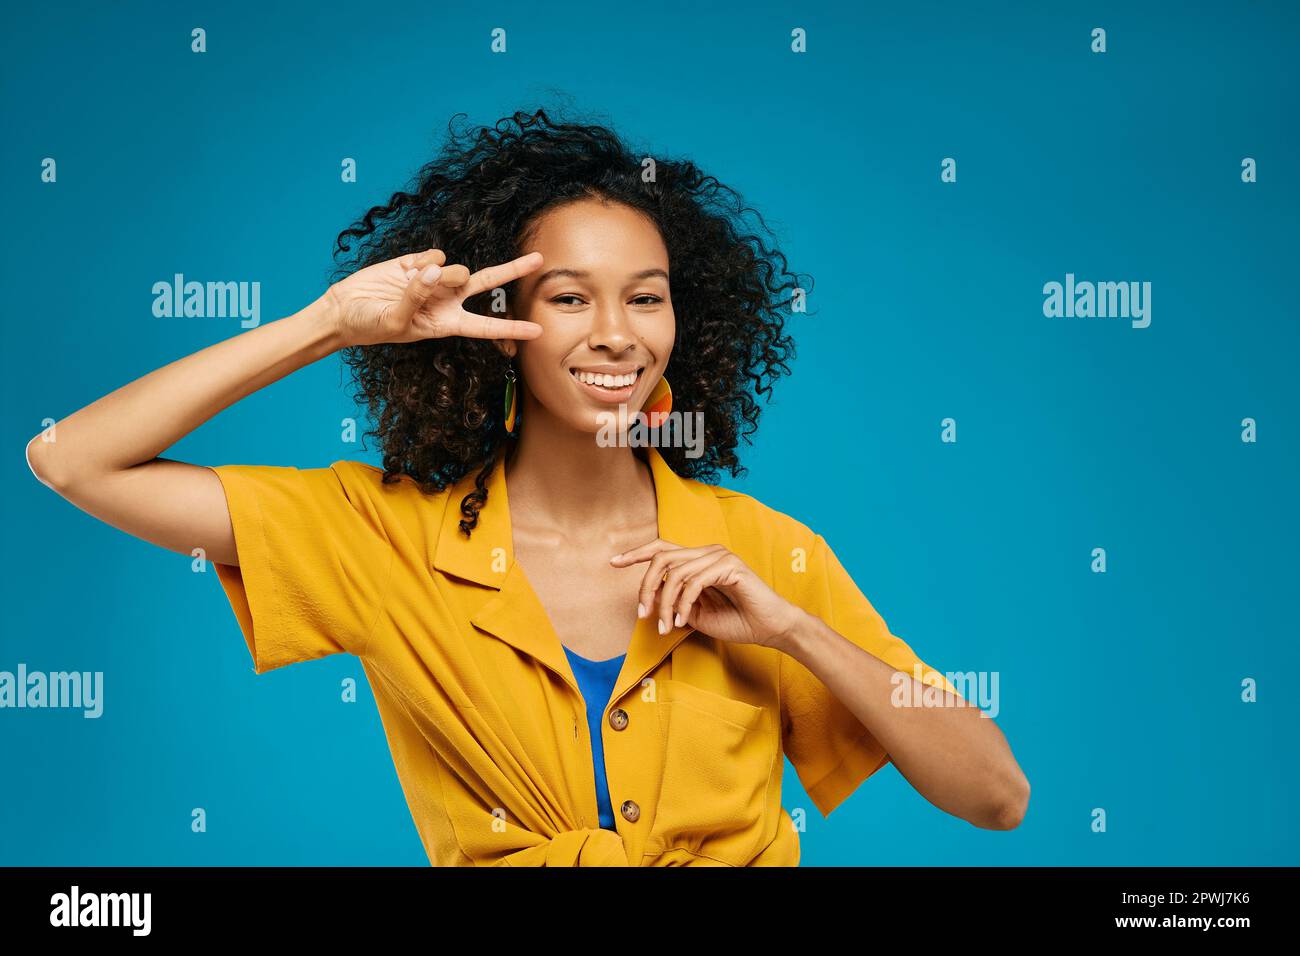 Das fröhliche, schwärzende Mädchen freut sich und hat Spaß in hellen Sommerkleidung, die mit ihren Fingern ein V-Schild auf blauem Hintergrund zeigt Stockfoto